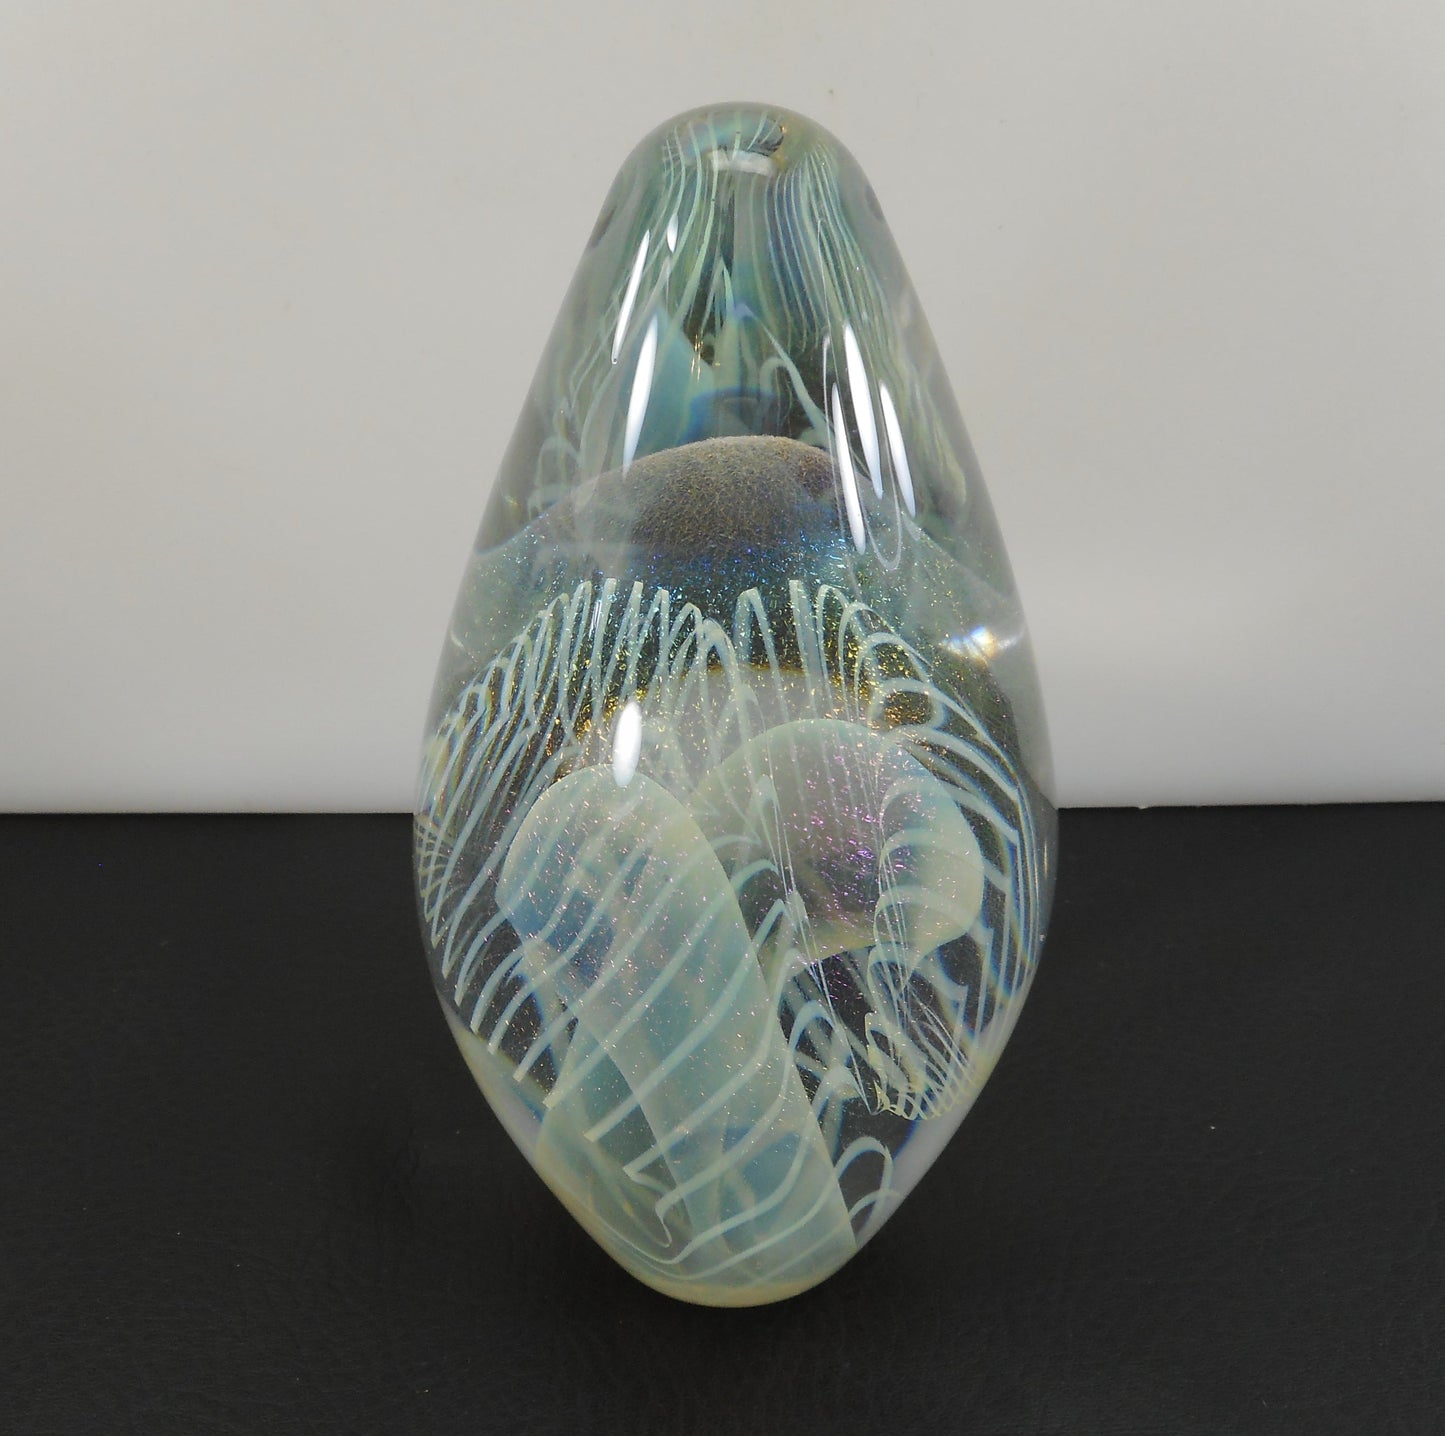 Robert Eickholt Signed 1995 Iridescent Art Glass Egg Pointed Paperweight 